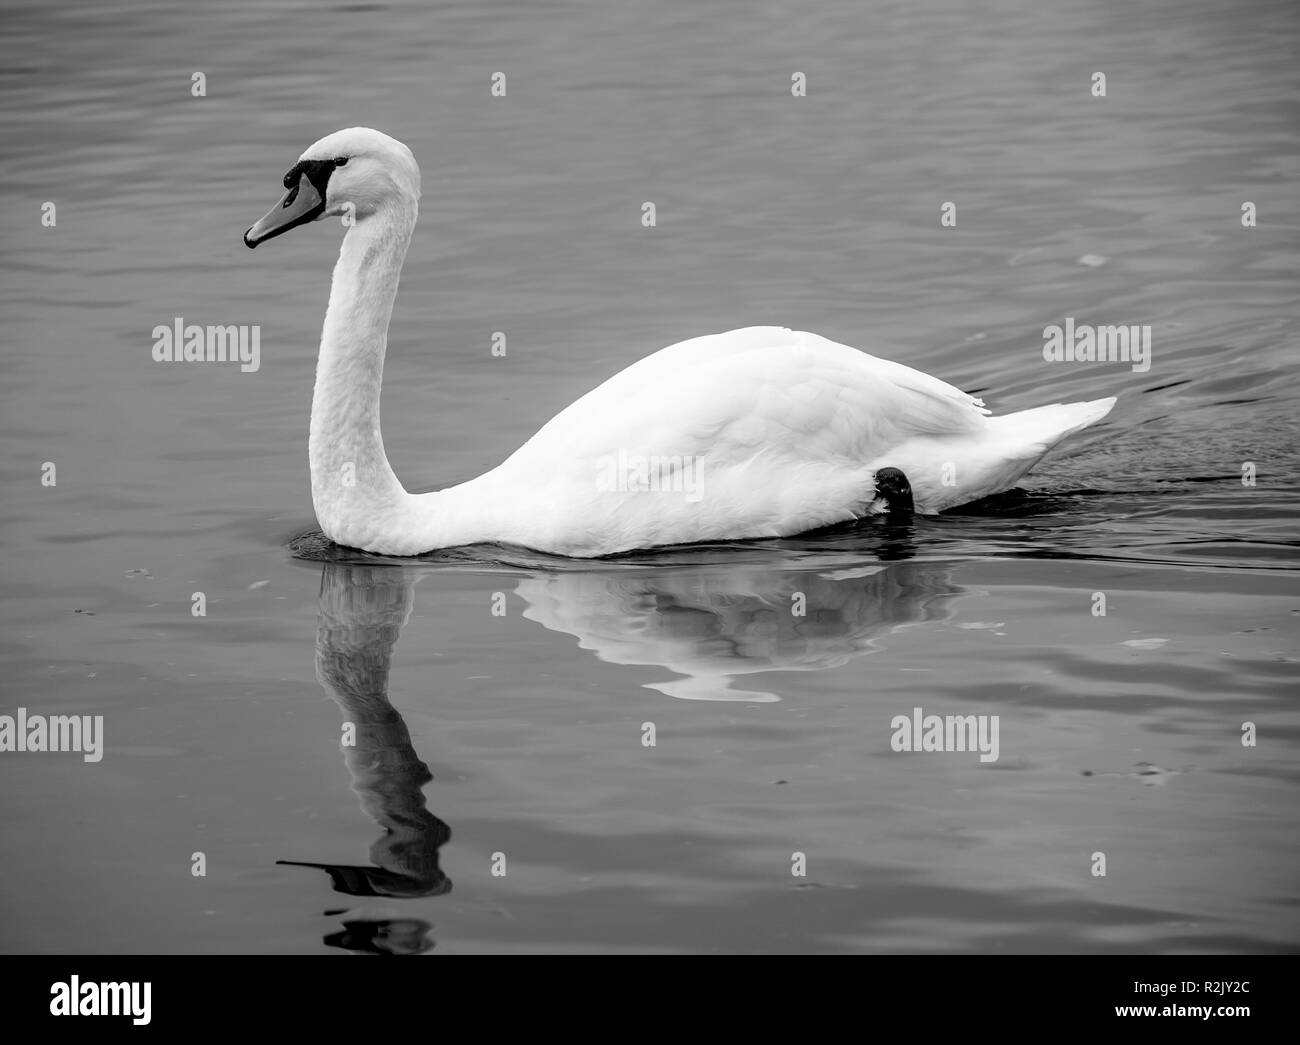 Ein männlicher Mute swan in Schwarz und Weiß Schwimmen auf dem See Windermere Bowness Lake District National Park Cumbria England Vereinigtes Königreich Großbritannien Stockfoto